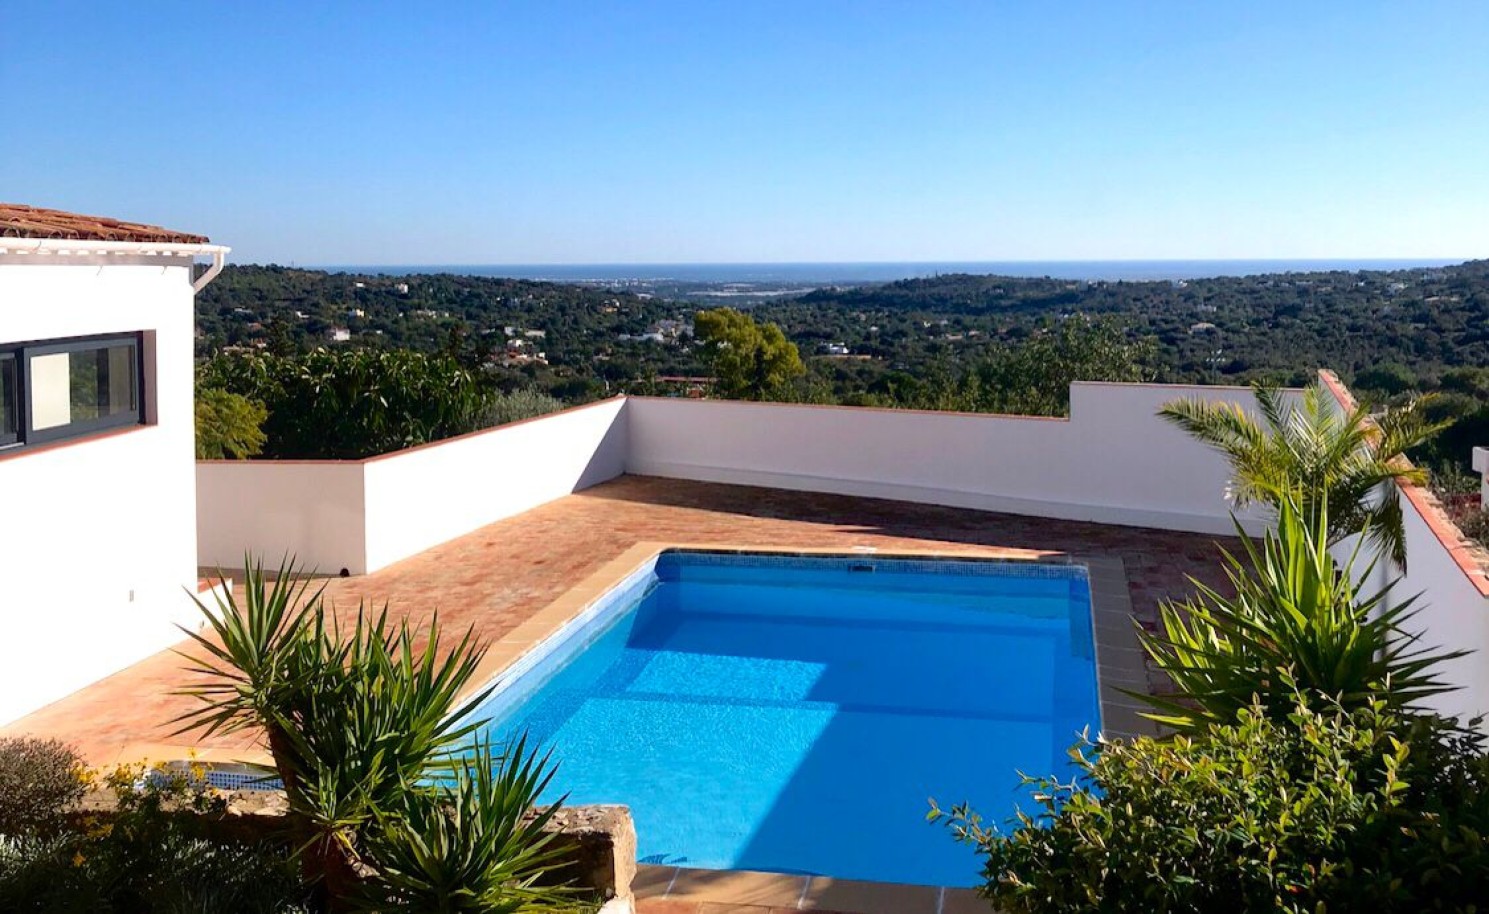 3 bedroom villa with sea view and pool, for sale in Santa Barbara, Algarve_246459